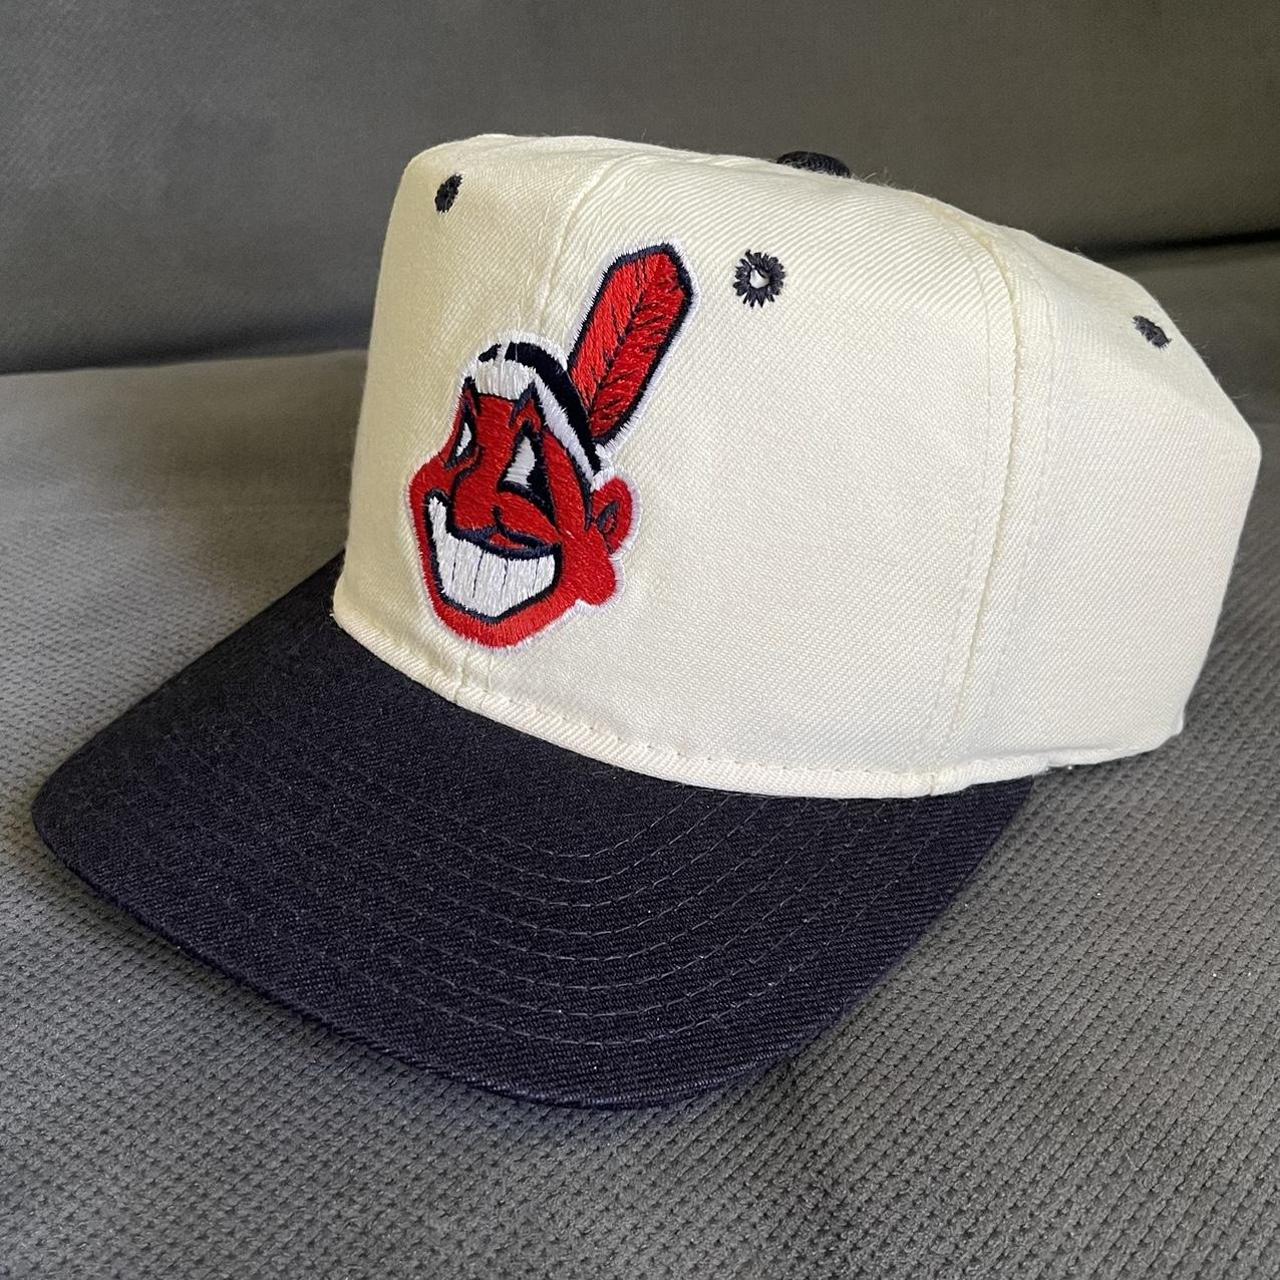 Vintage Louisville Slugger Baseball Cap Hat Leather - Depop